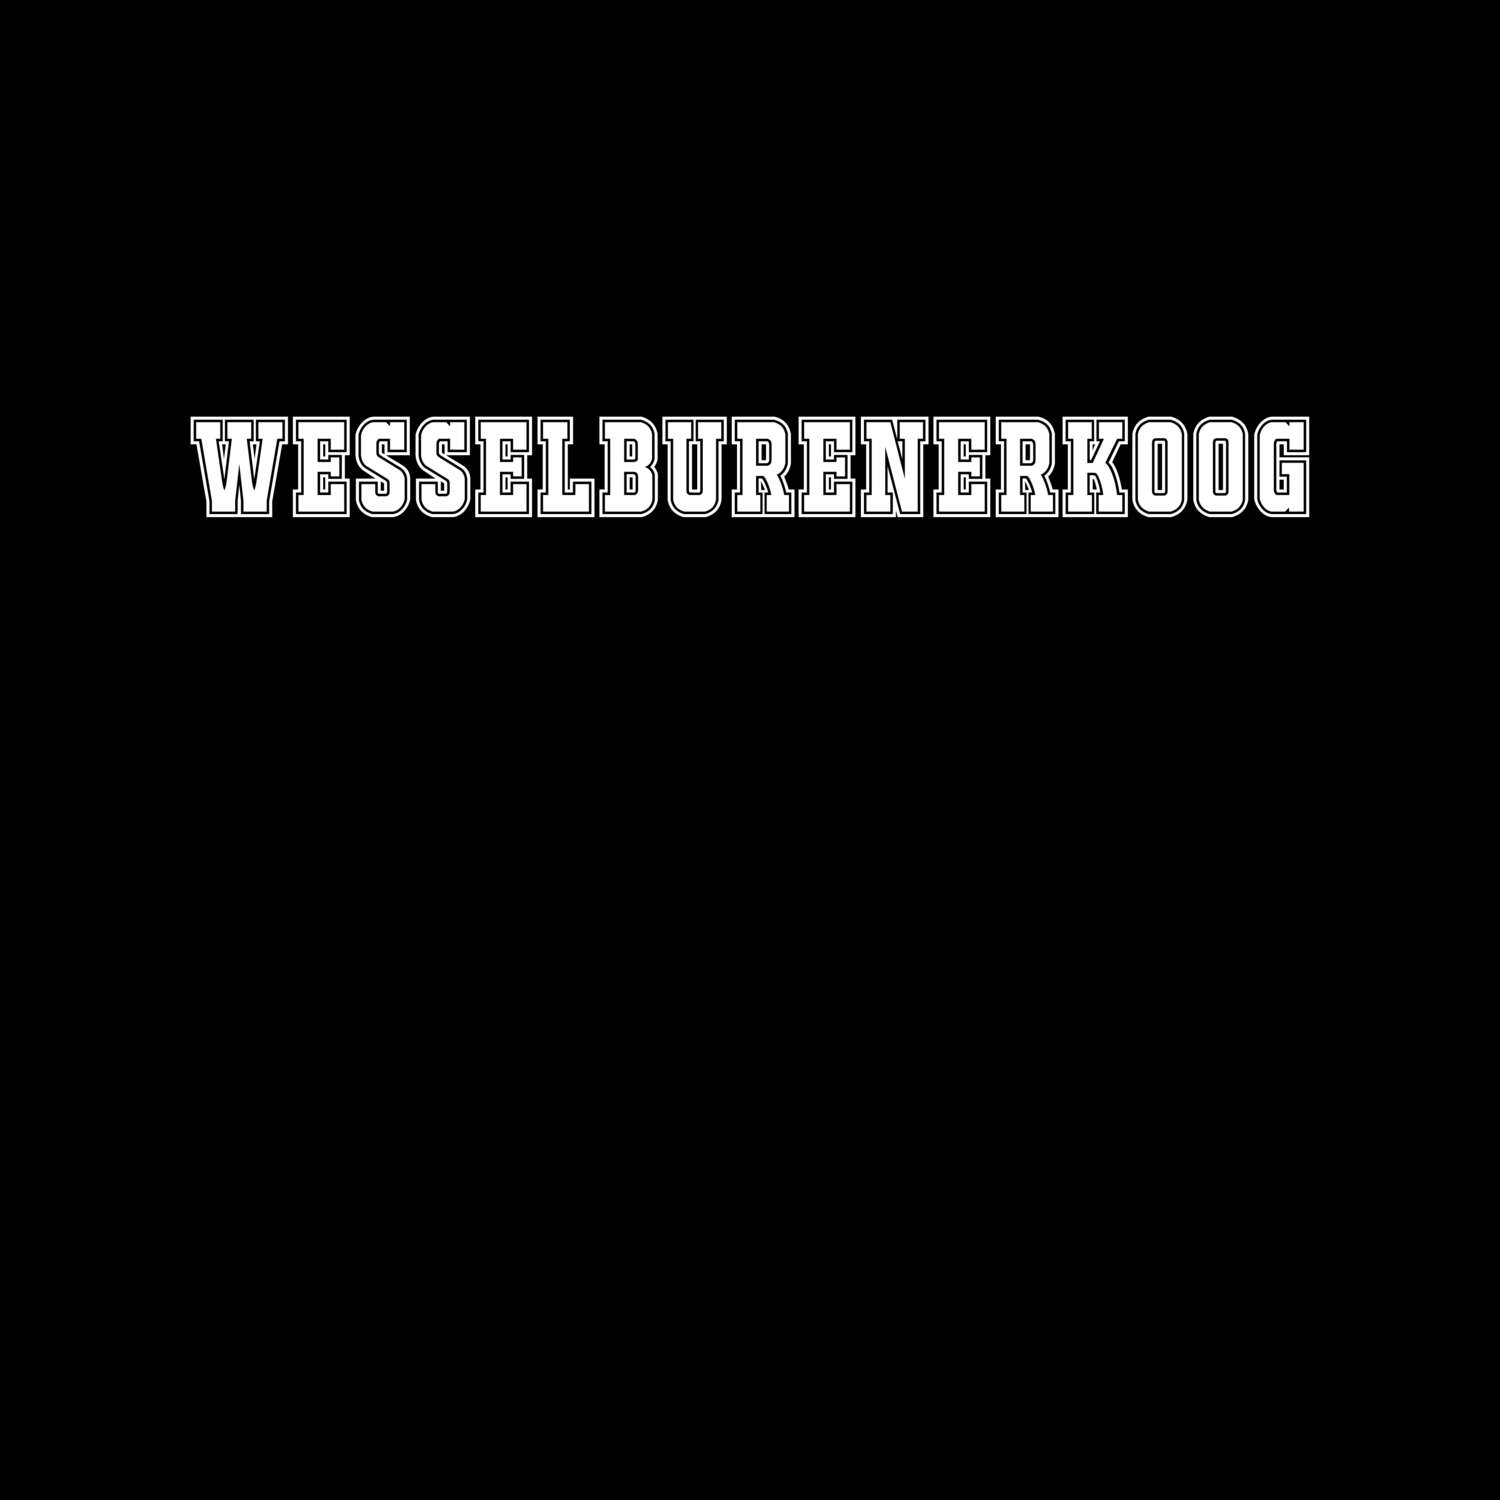 Wesselburenerkoog T-Shirt »Classic«